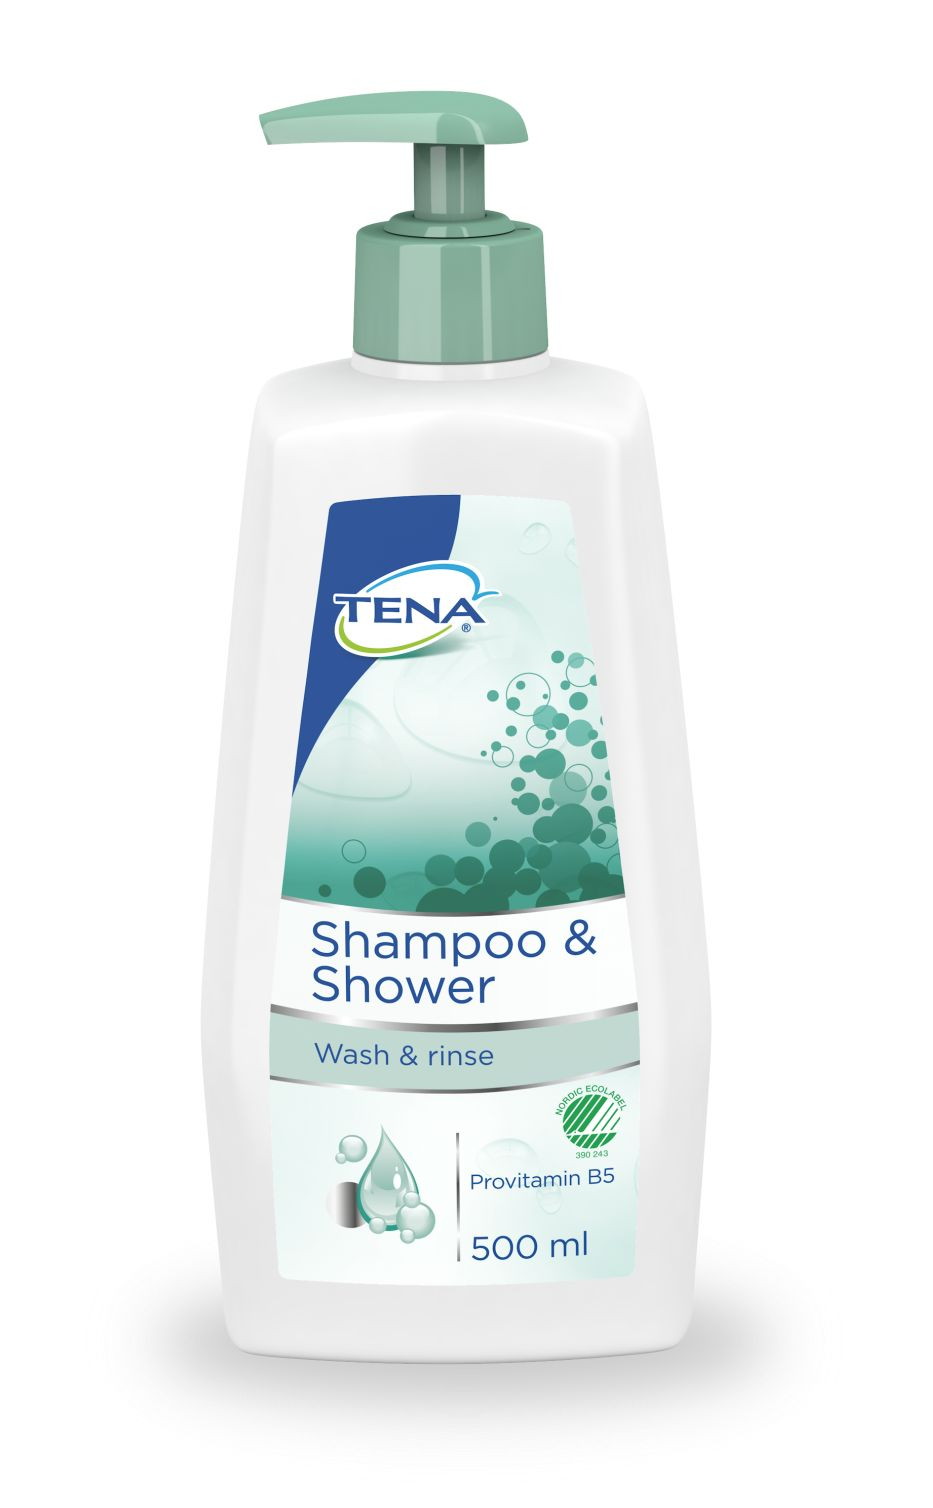 Tena Shampoo and Shower šampon a sprchový gel 500 ml Tena